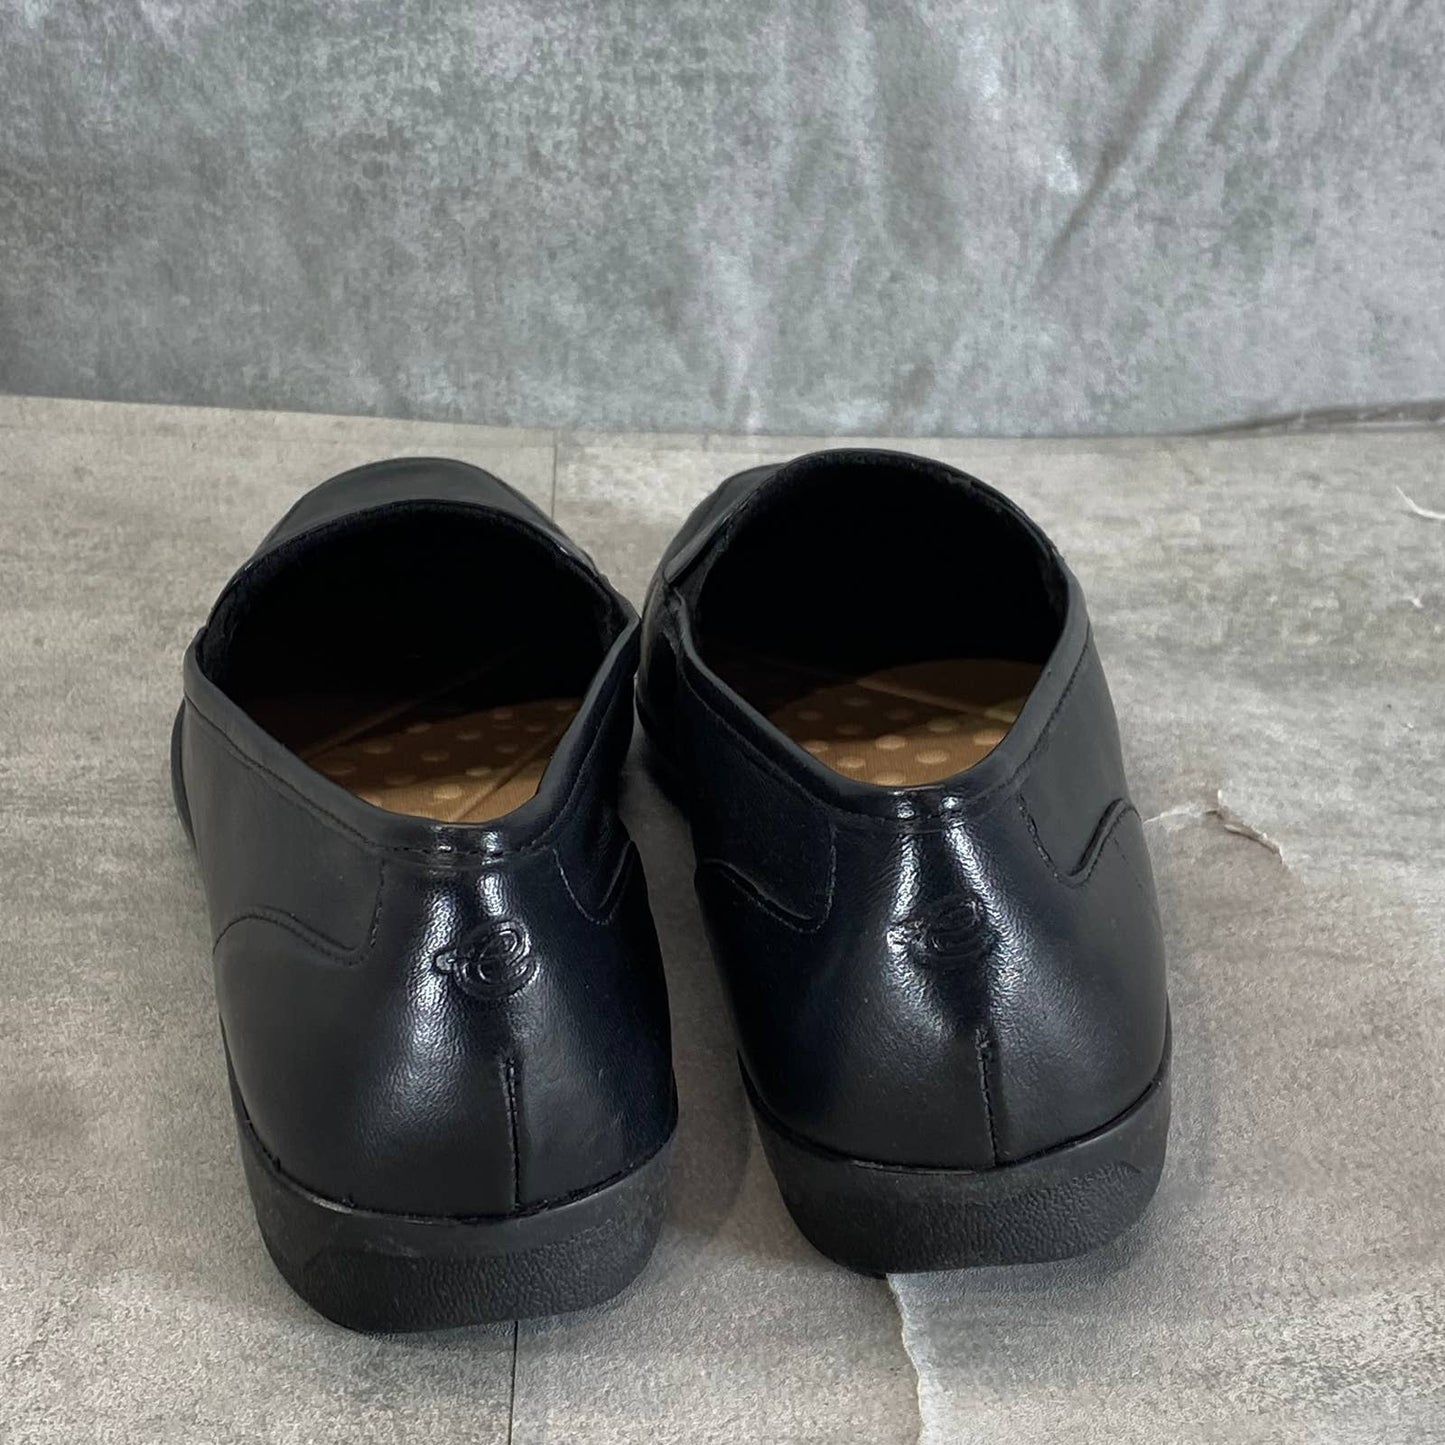 EASY SPIRIT Women's Black Leather Devitt Round-Toe Slip-On Loafer Flats SZ 8